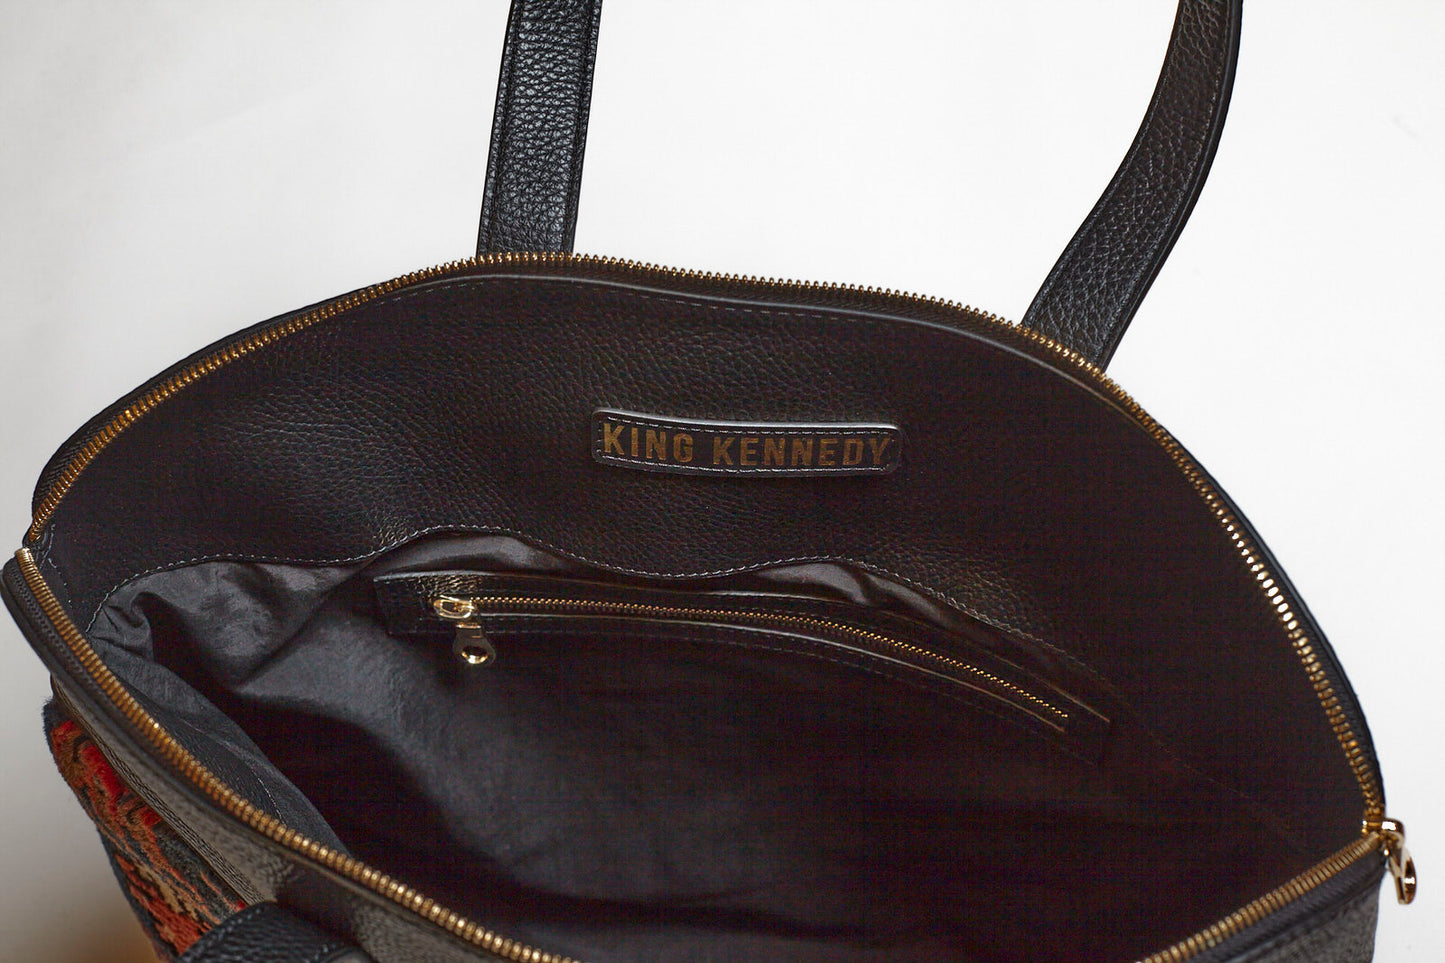 King Kennedy Despina Bag - 00018